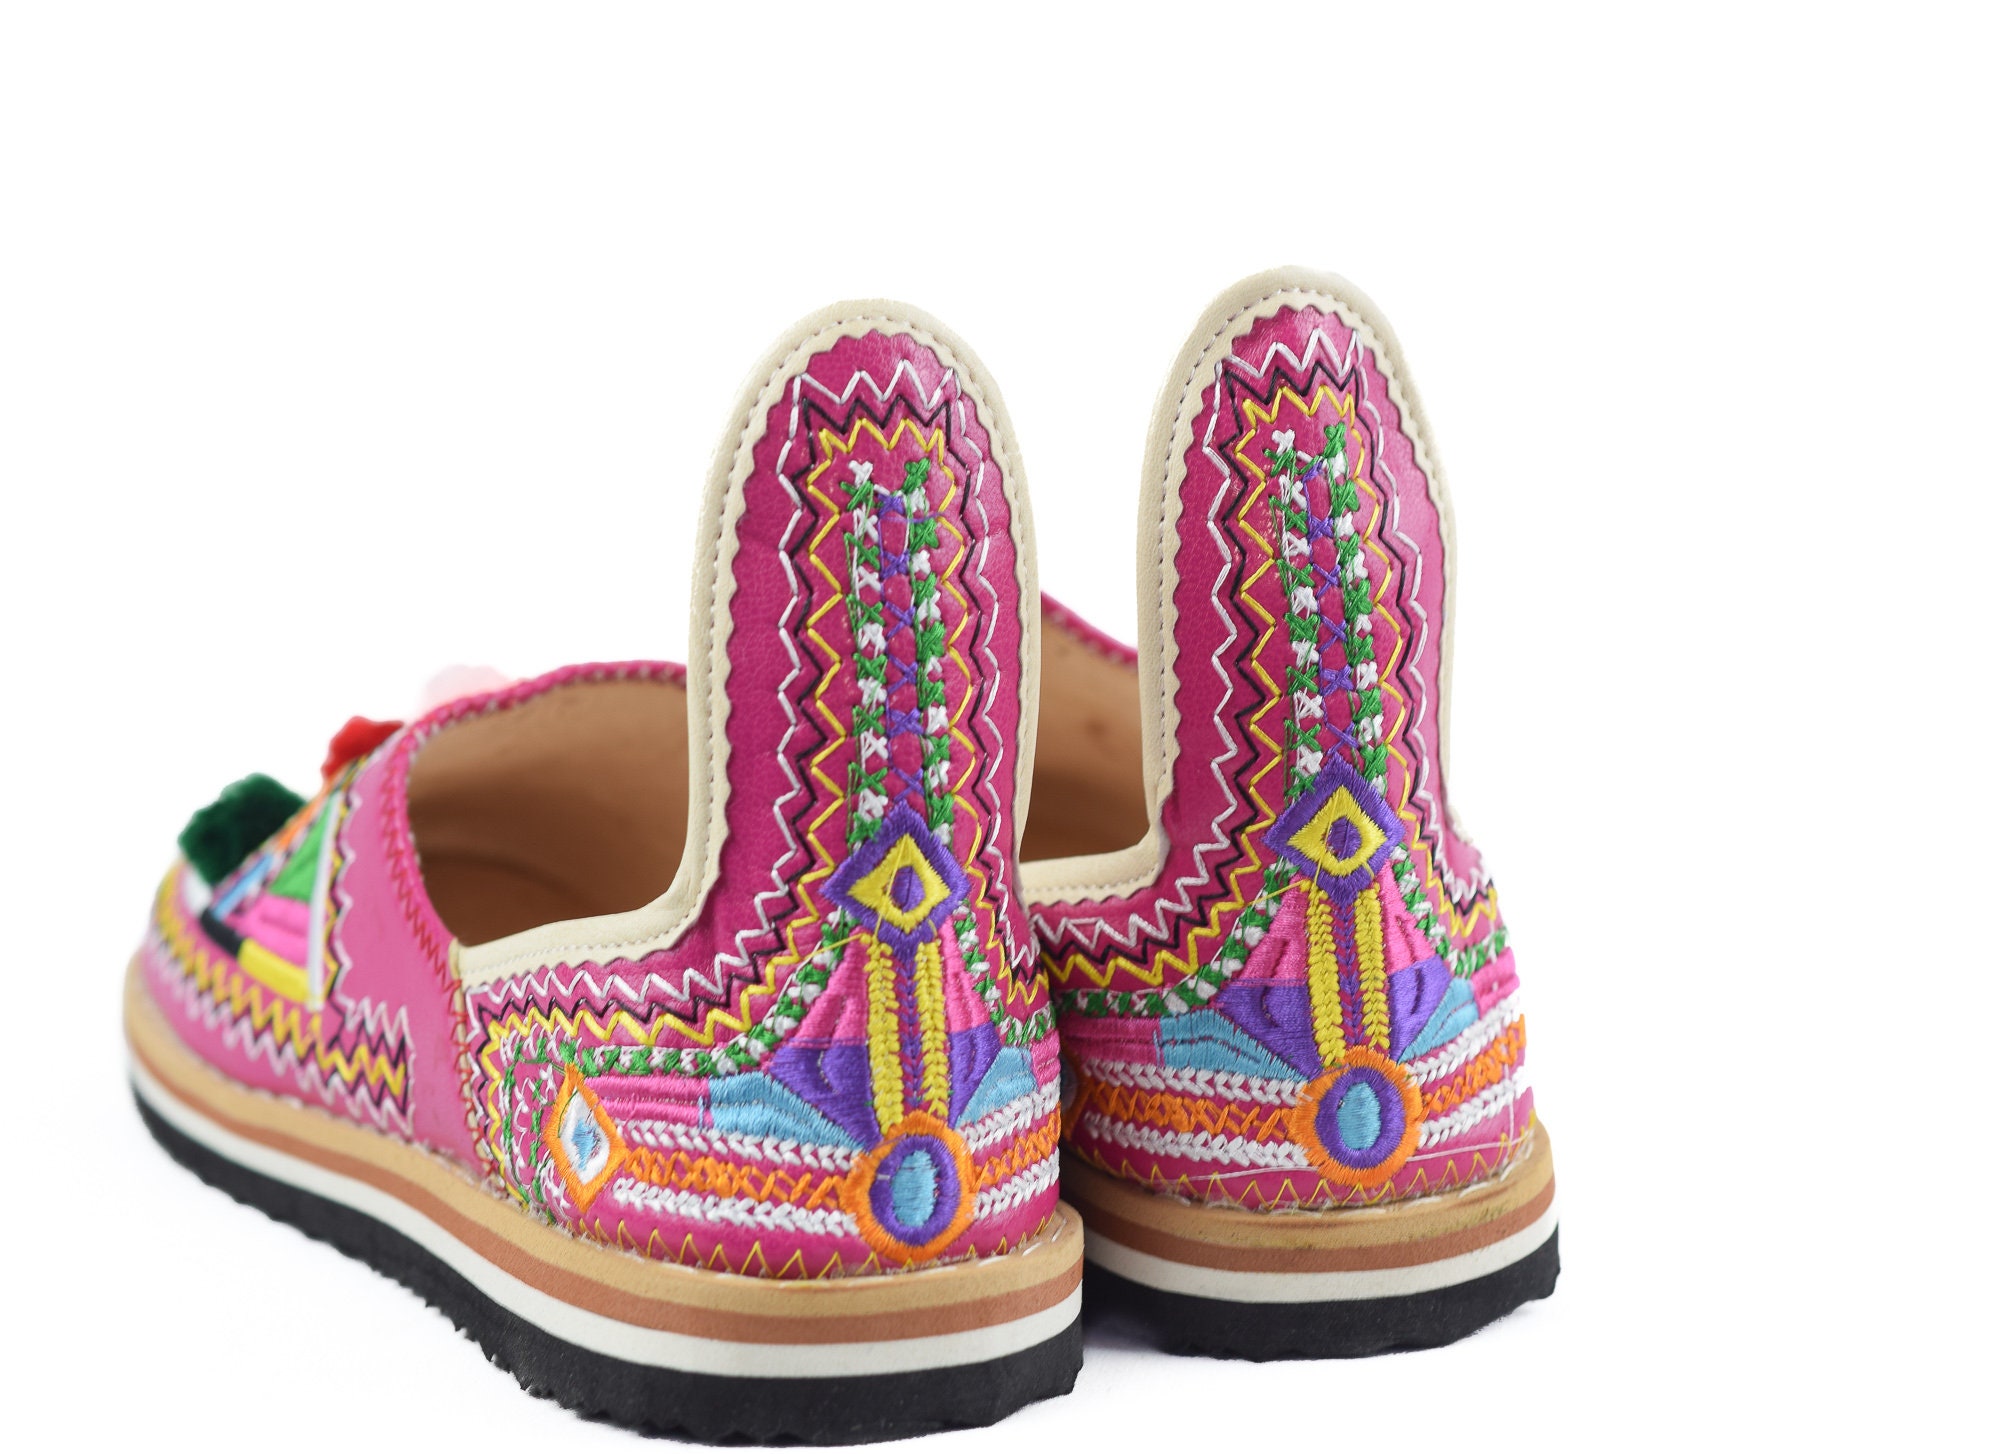 Berber babouche pom pom slippers babouche Berber shoes | Etsy